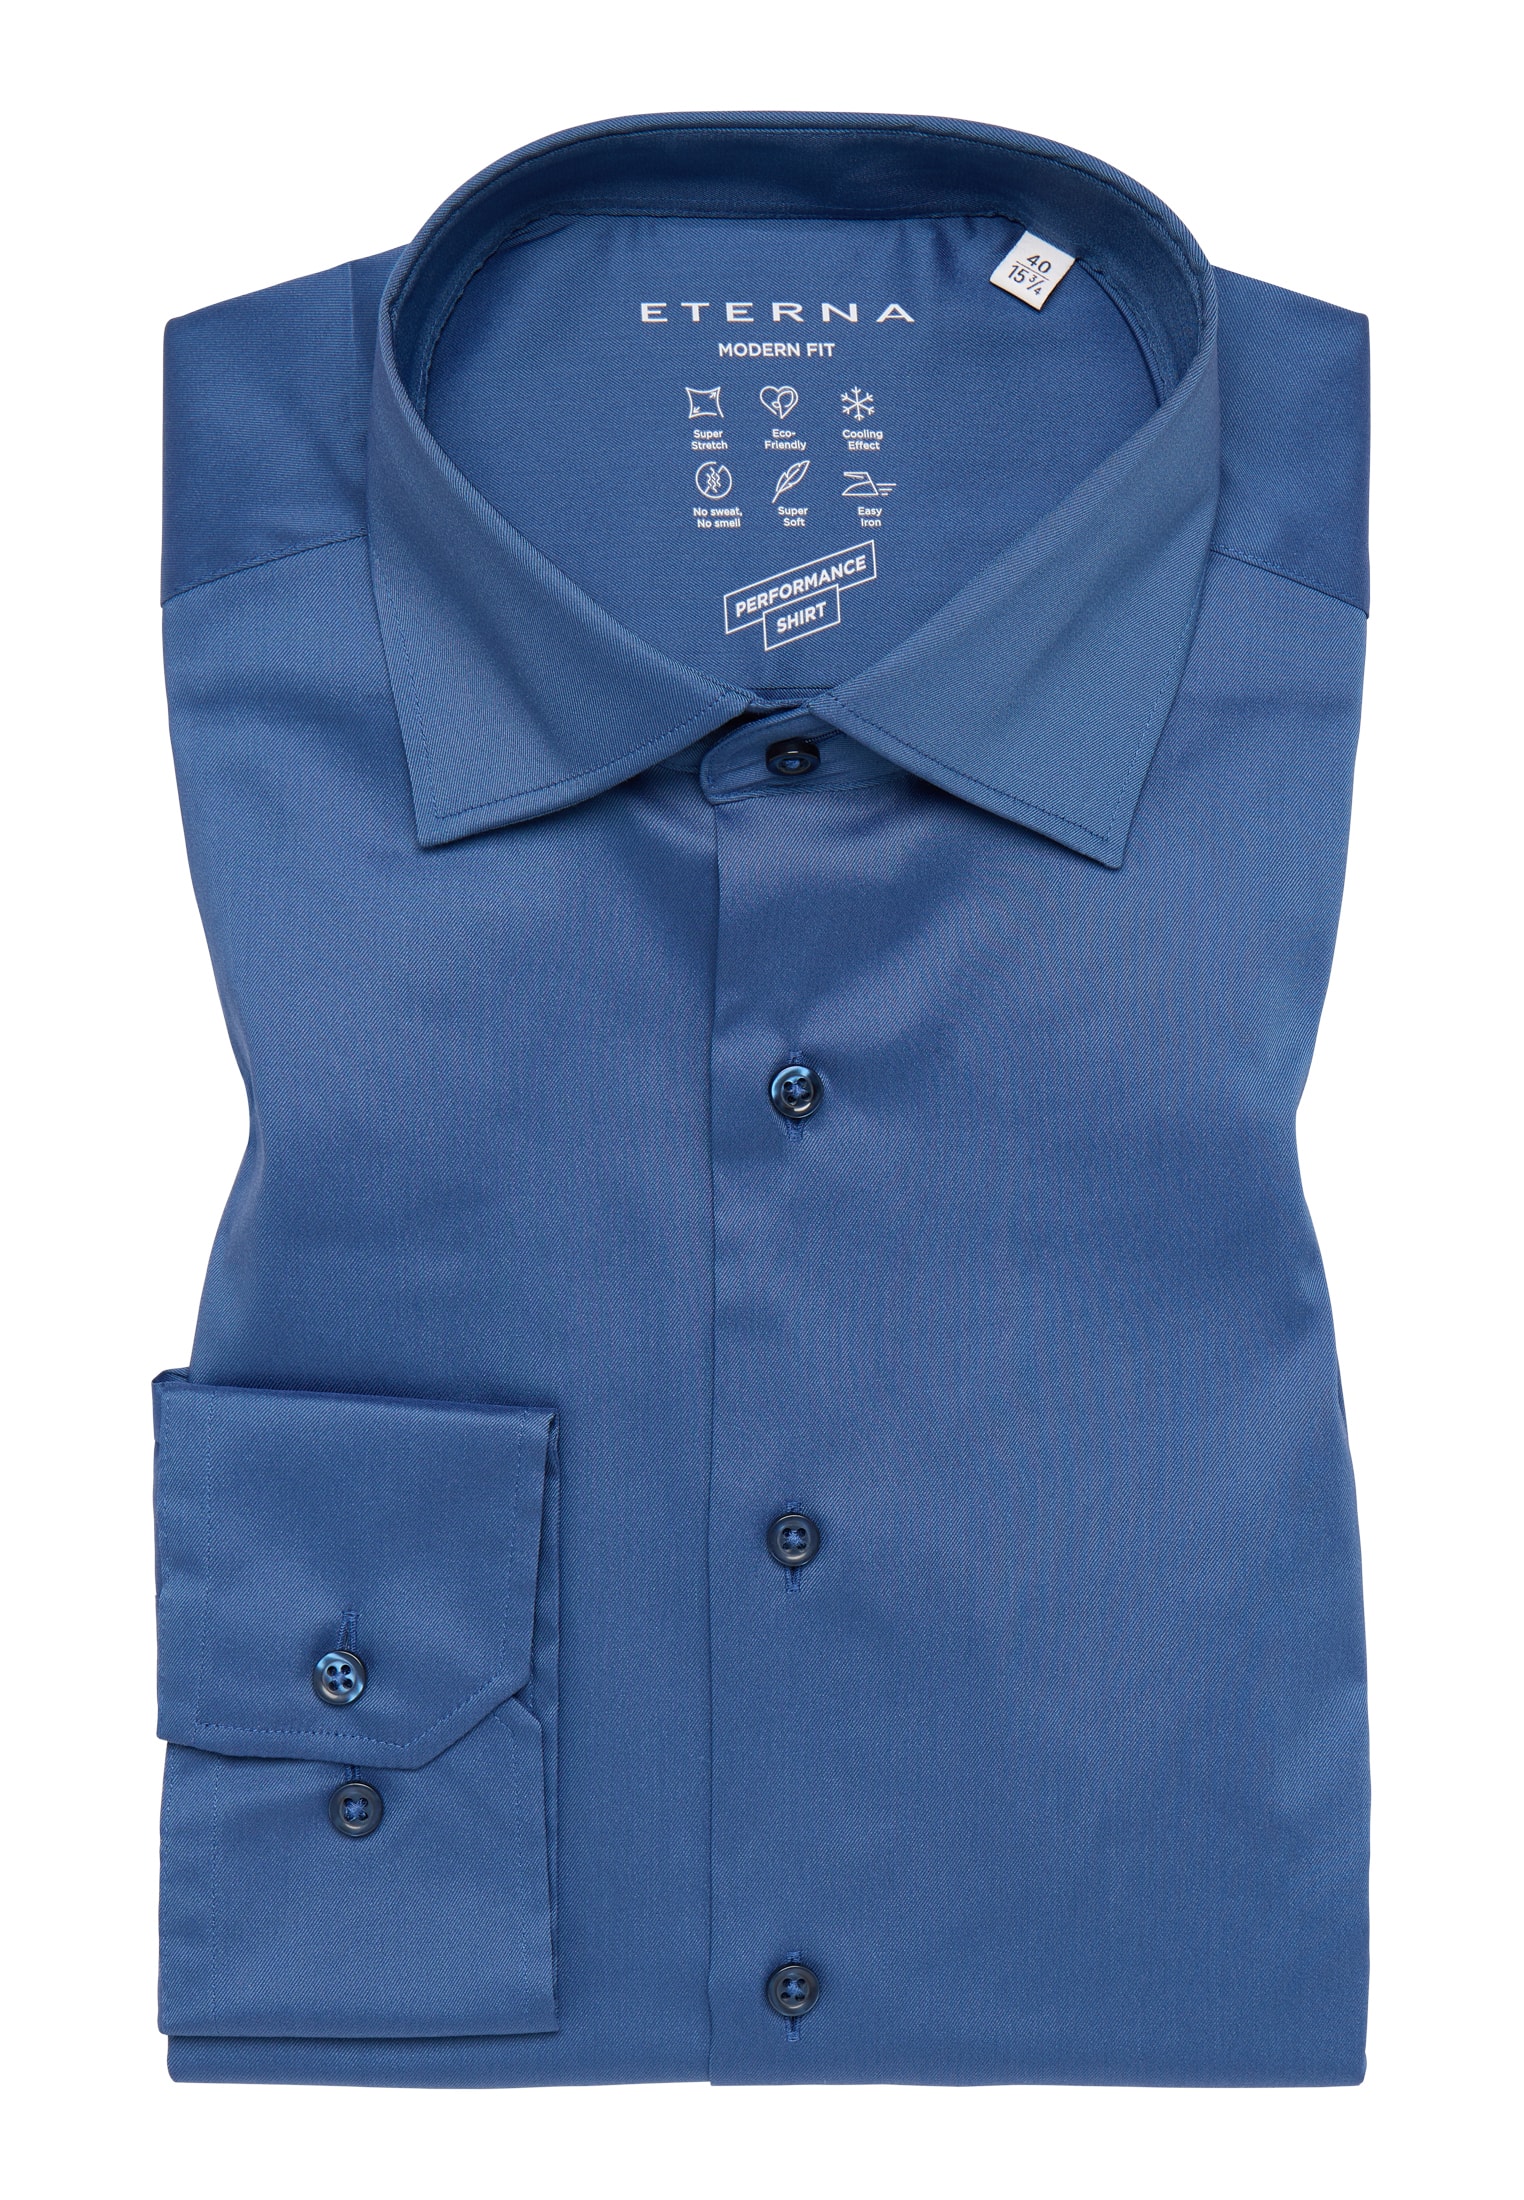 MODERN FIT Performance Shirt in rauchblau unifarben | rauchblau | 45 |  Langarm | 1SH02224-01-62-45-1/1